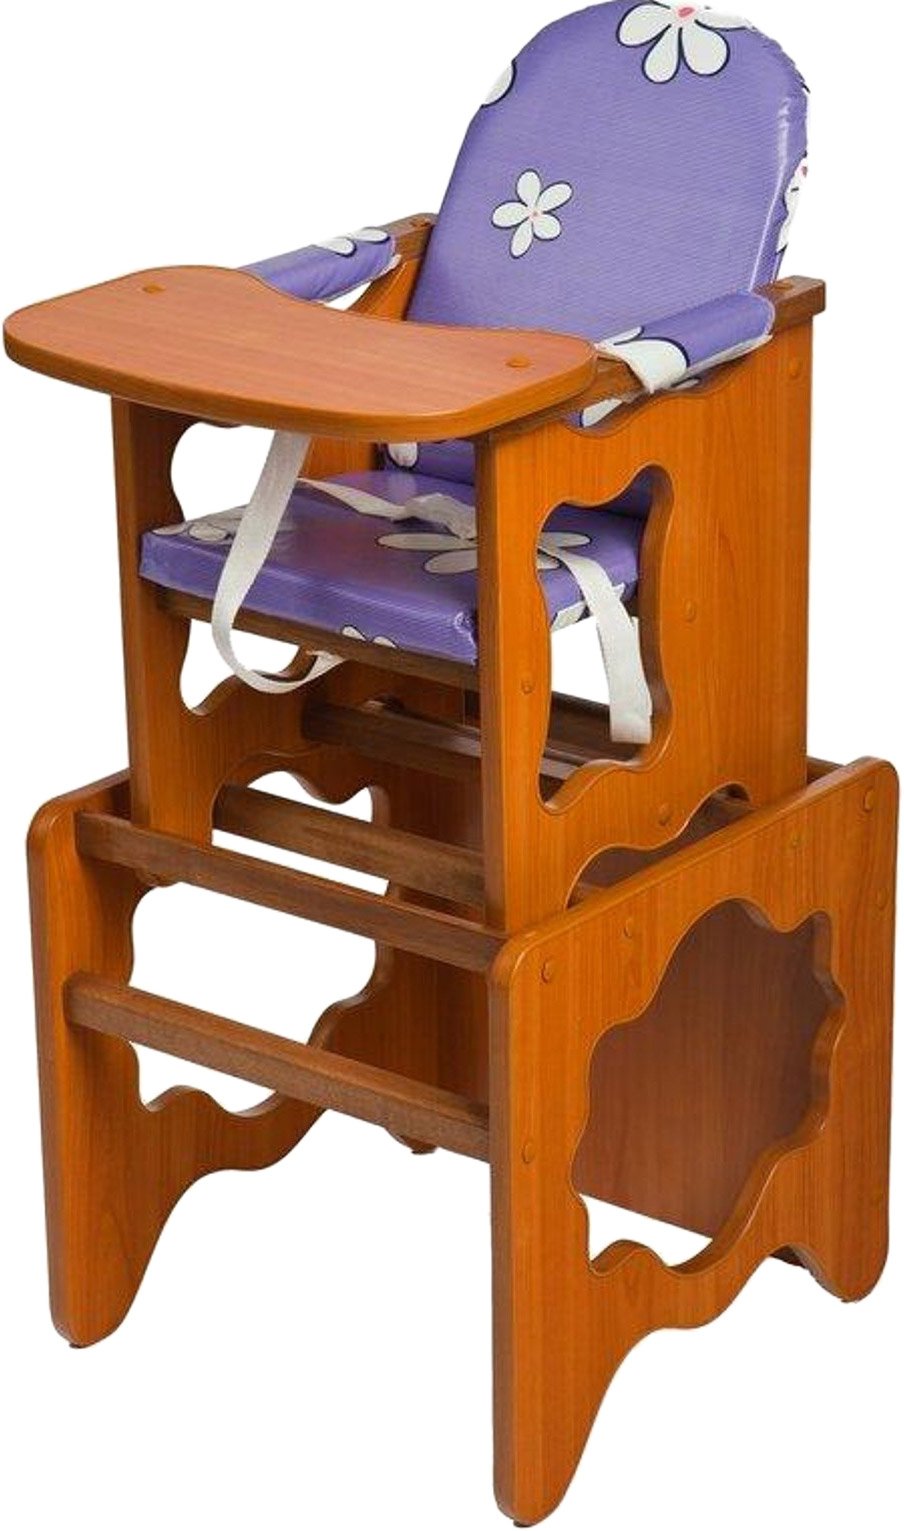 Детский деревянный столик со стульчиком трансформер